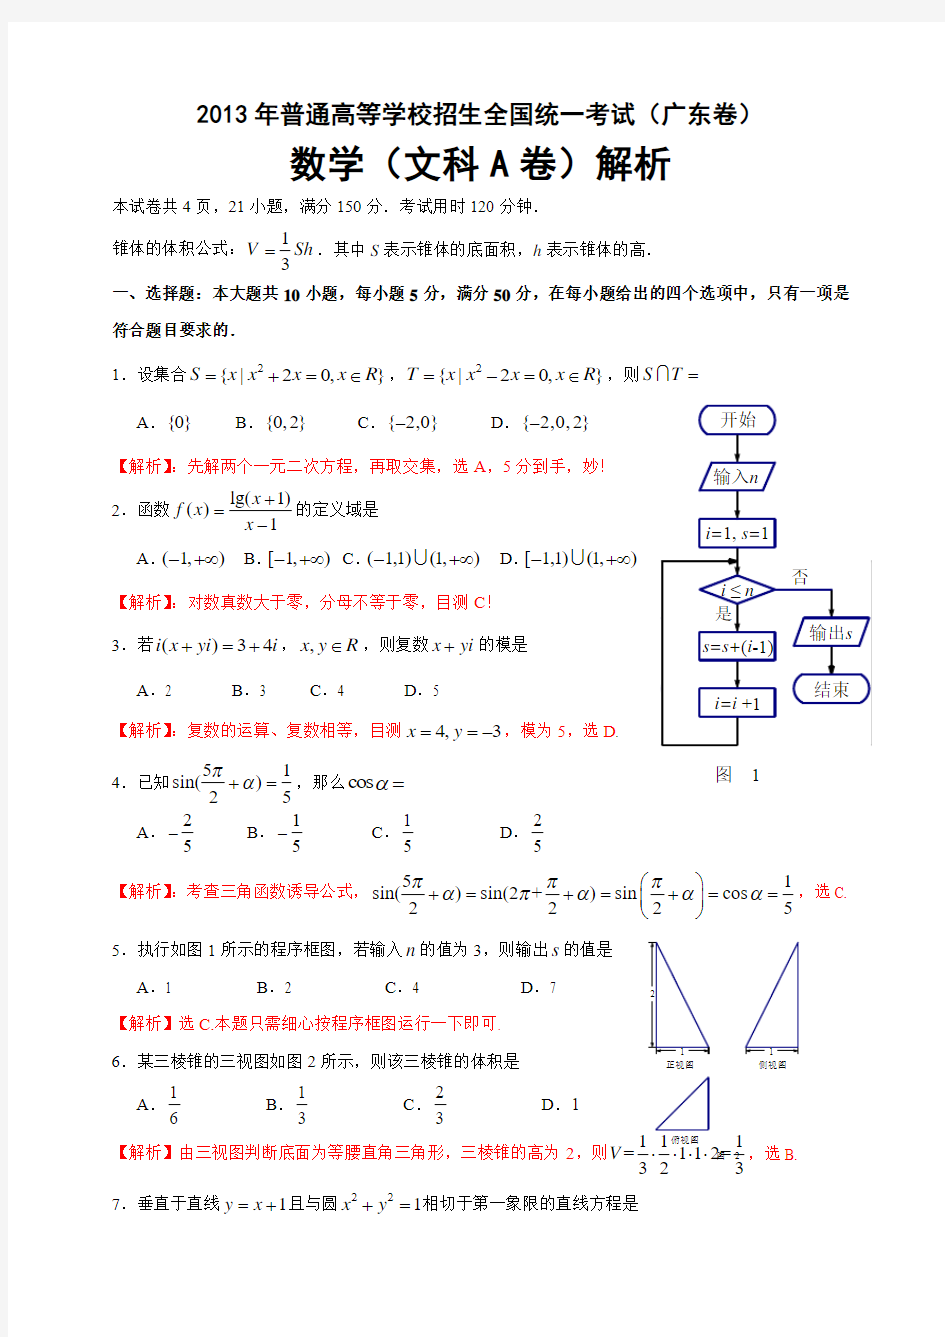 2013年高考真题——文科数学(广东卷A)含答案